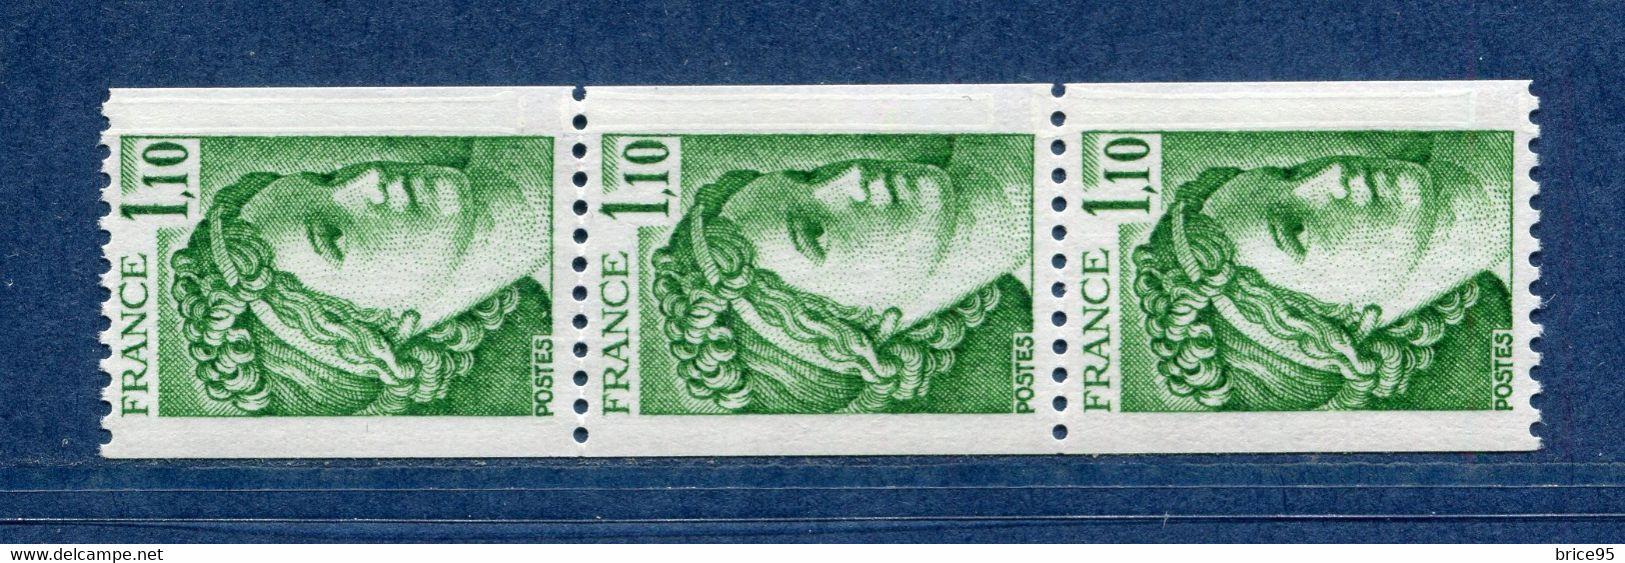 ⭐ France - Variété - YT N° 2062 A - Numéro Rouge - Couleurs - Pétouilles - Neuf Sans Charnière - 1979 ⭐ - Unused Stamps